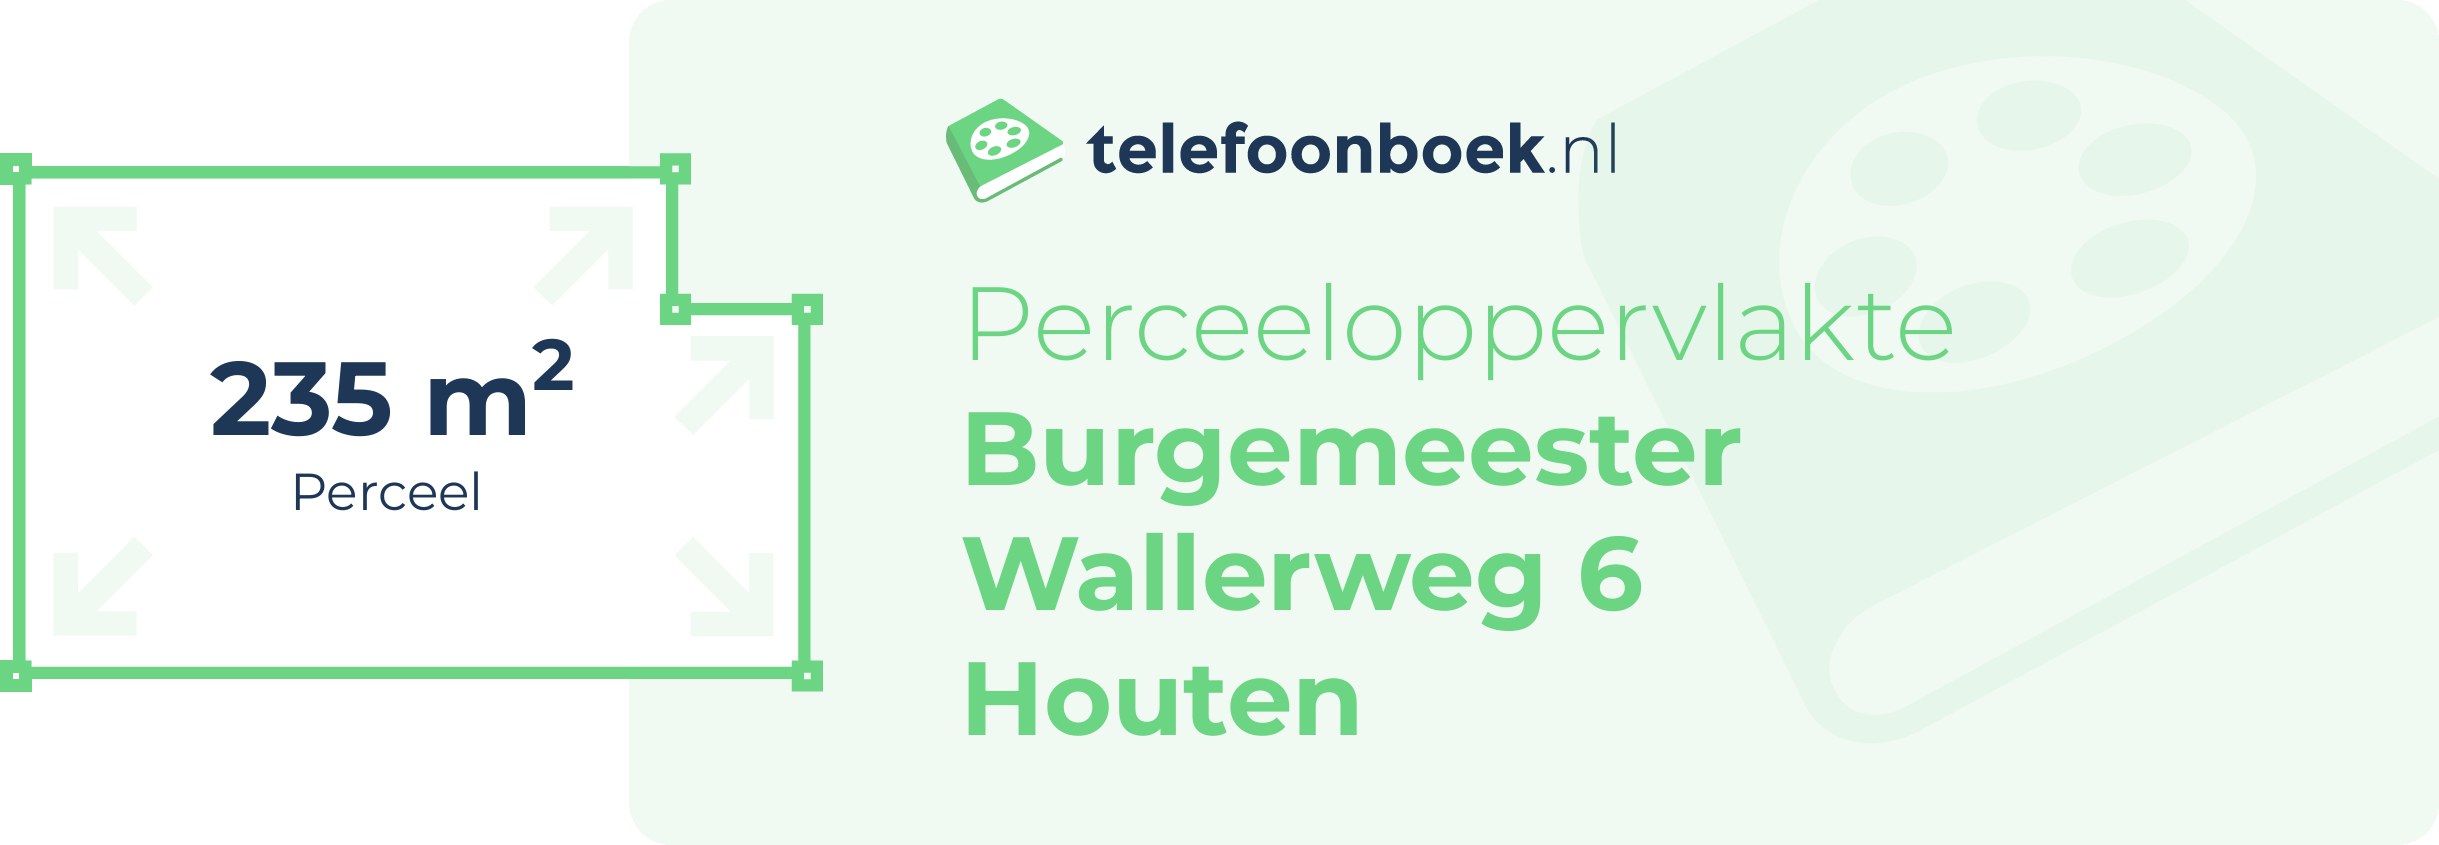 Perceeloppervlakte Burgemeester Wallerweg 6 Houten